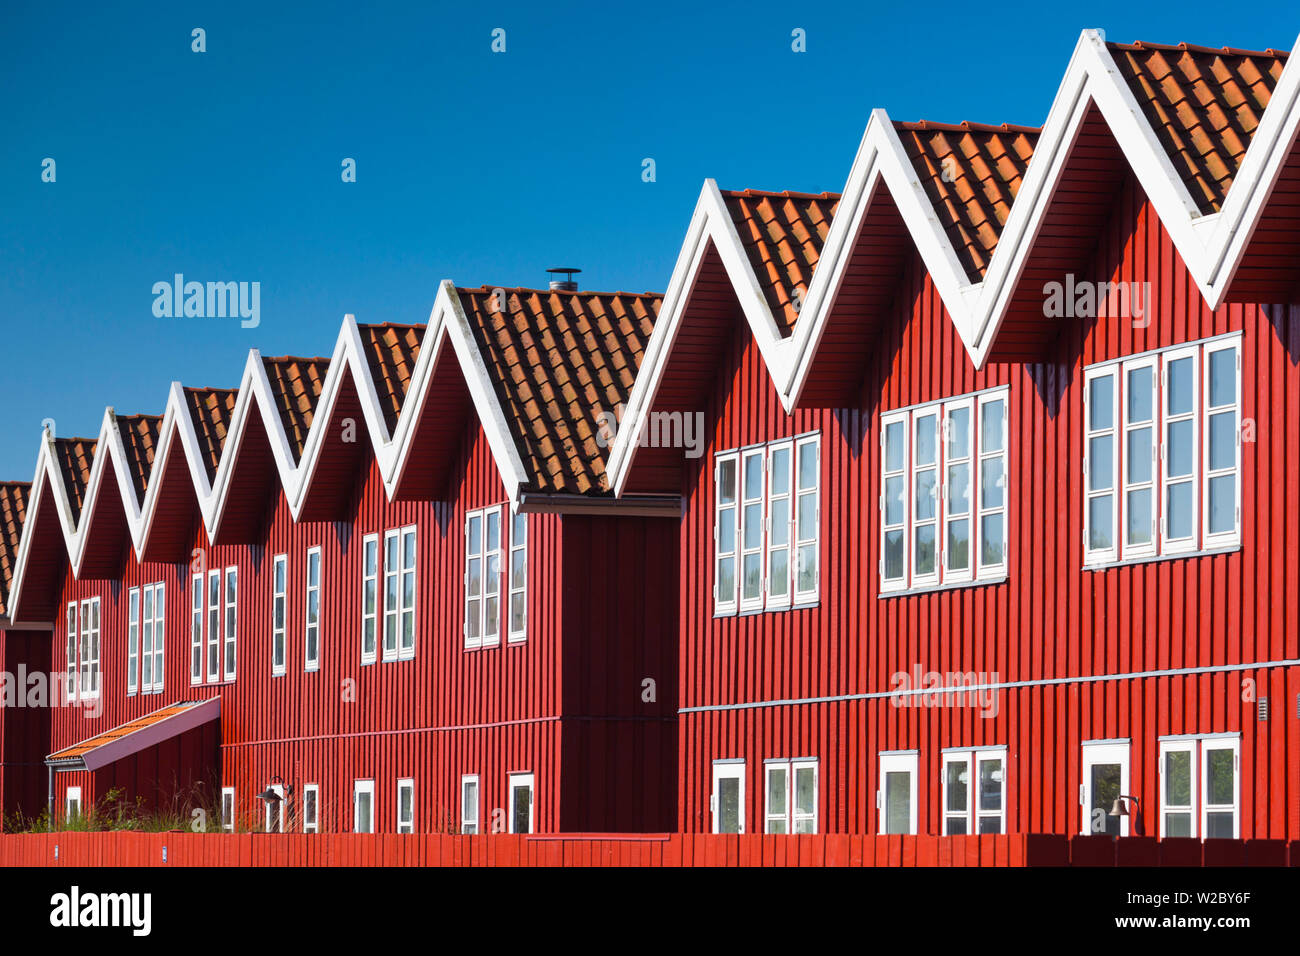 Denmark, Jutland, Ebeltoft, red port buildlings Stock Photo